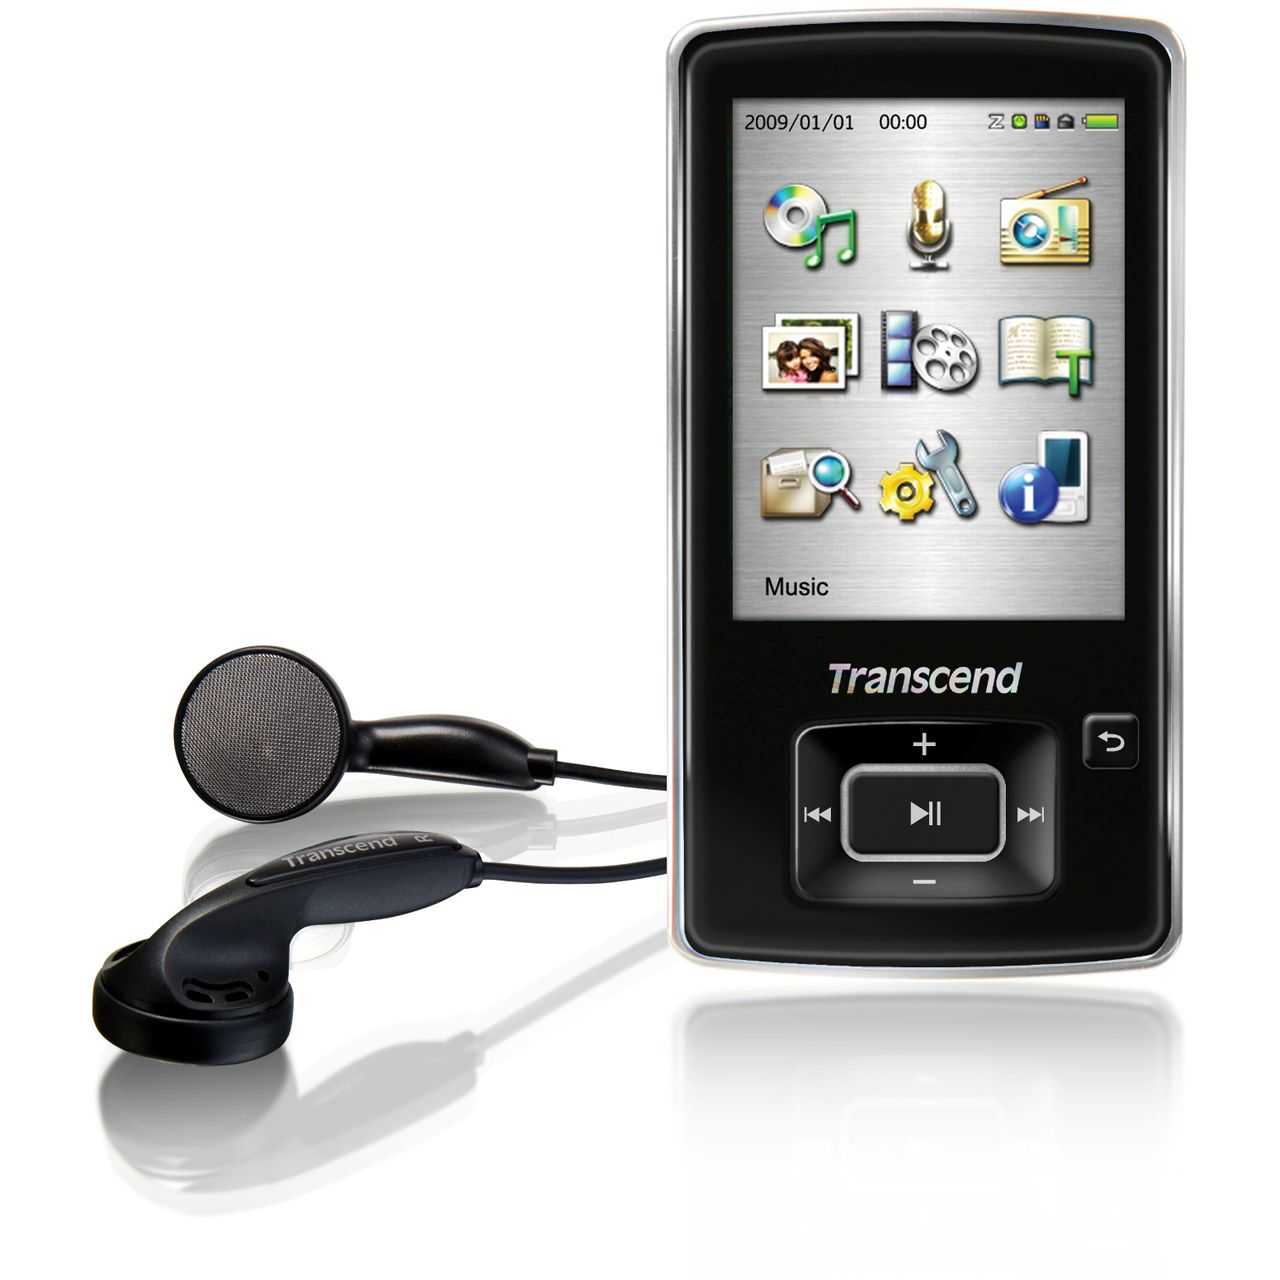 MP3-плеера Transcend MP870 4Gb - подробные характеристики обзоры видео фото Цены в интернет-магазинах где можно купить mp3-плееру Transcend MP870 4Gb